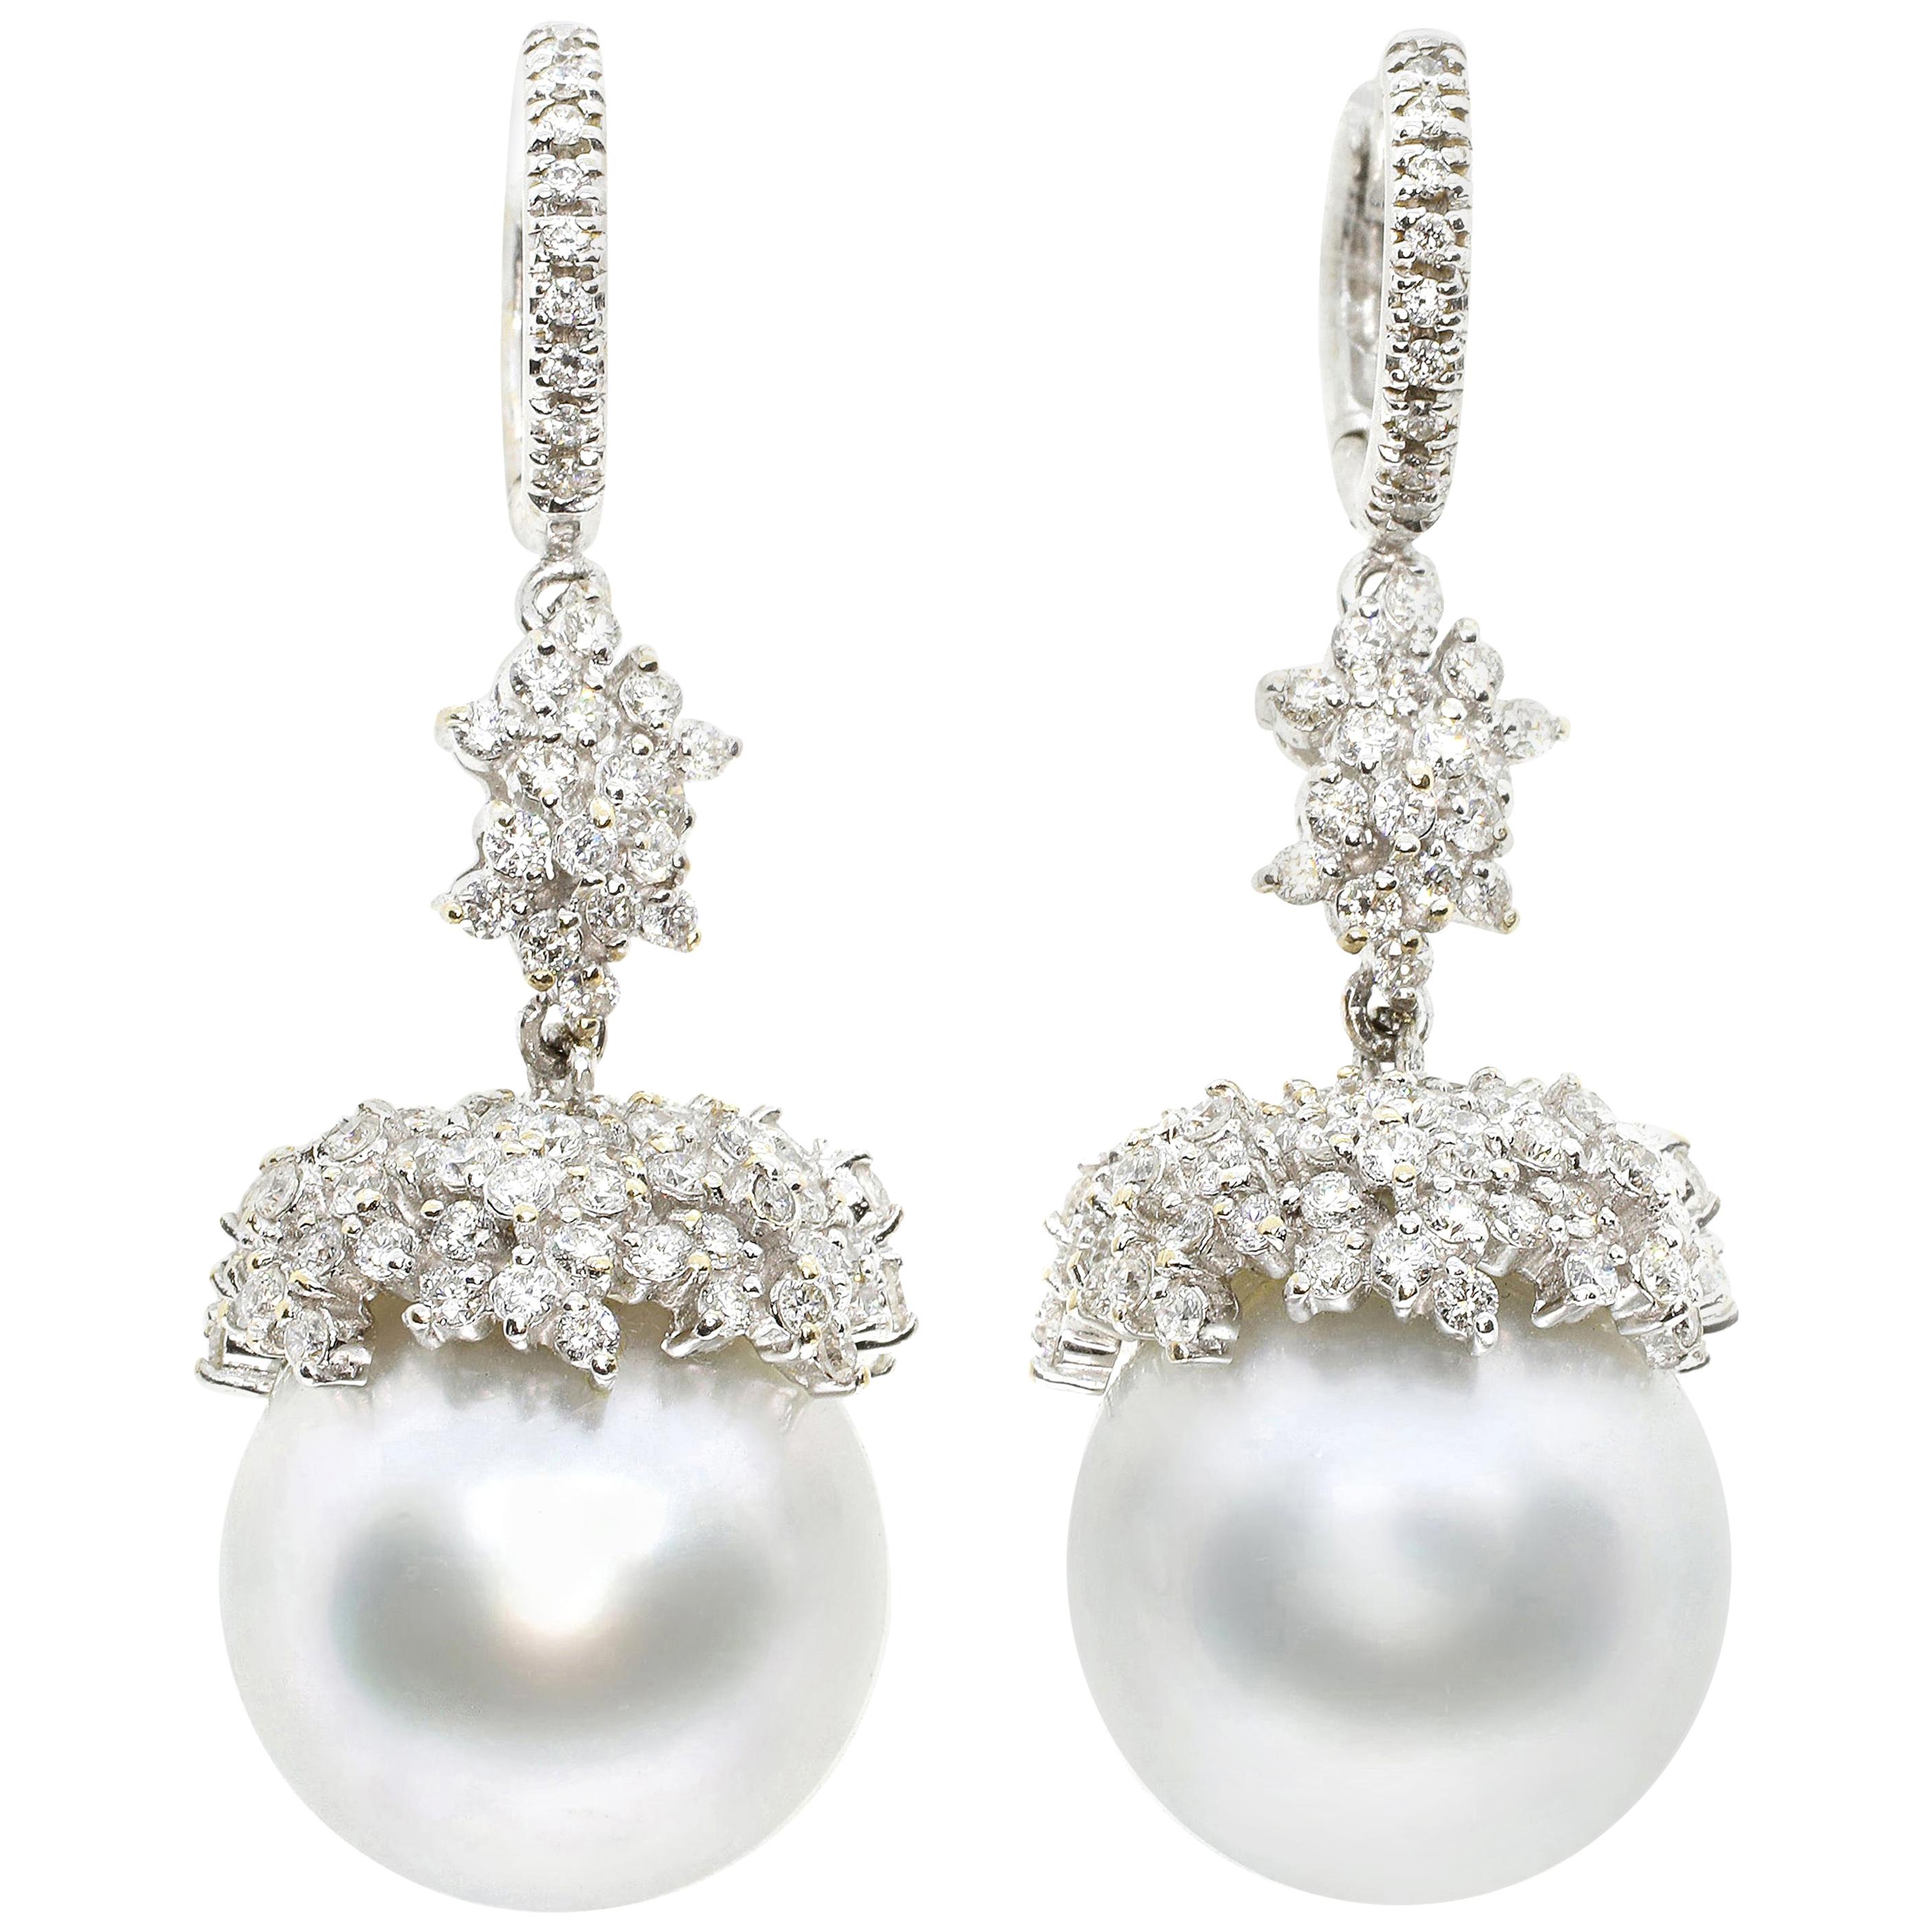 Boucles d'oreilles contemporaines en or blanc 18 carats avec perles australiennes et diamants blancs